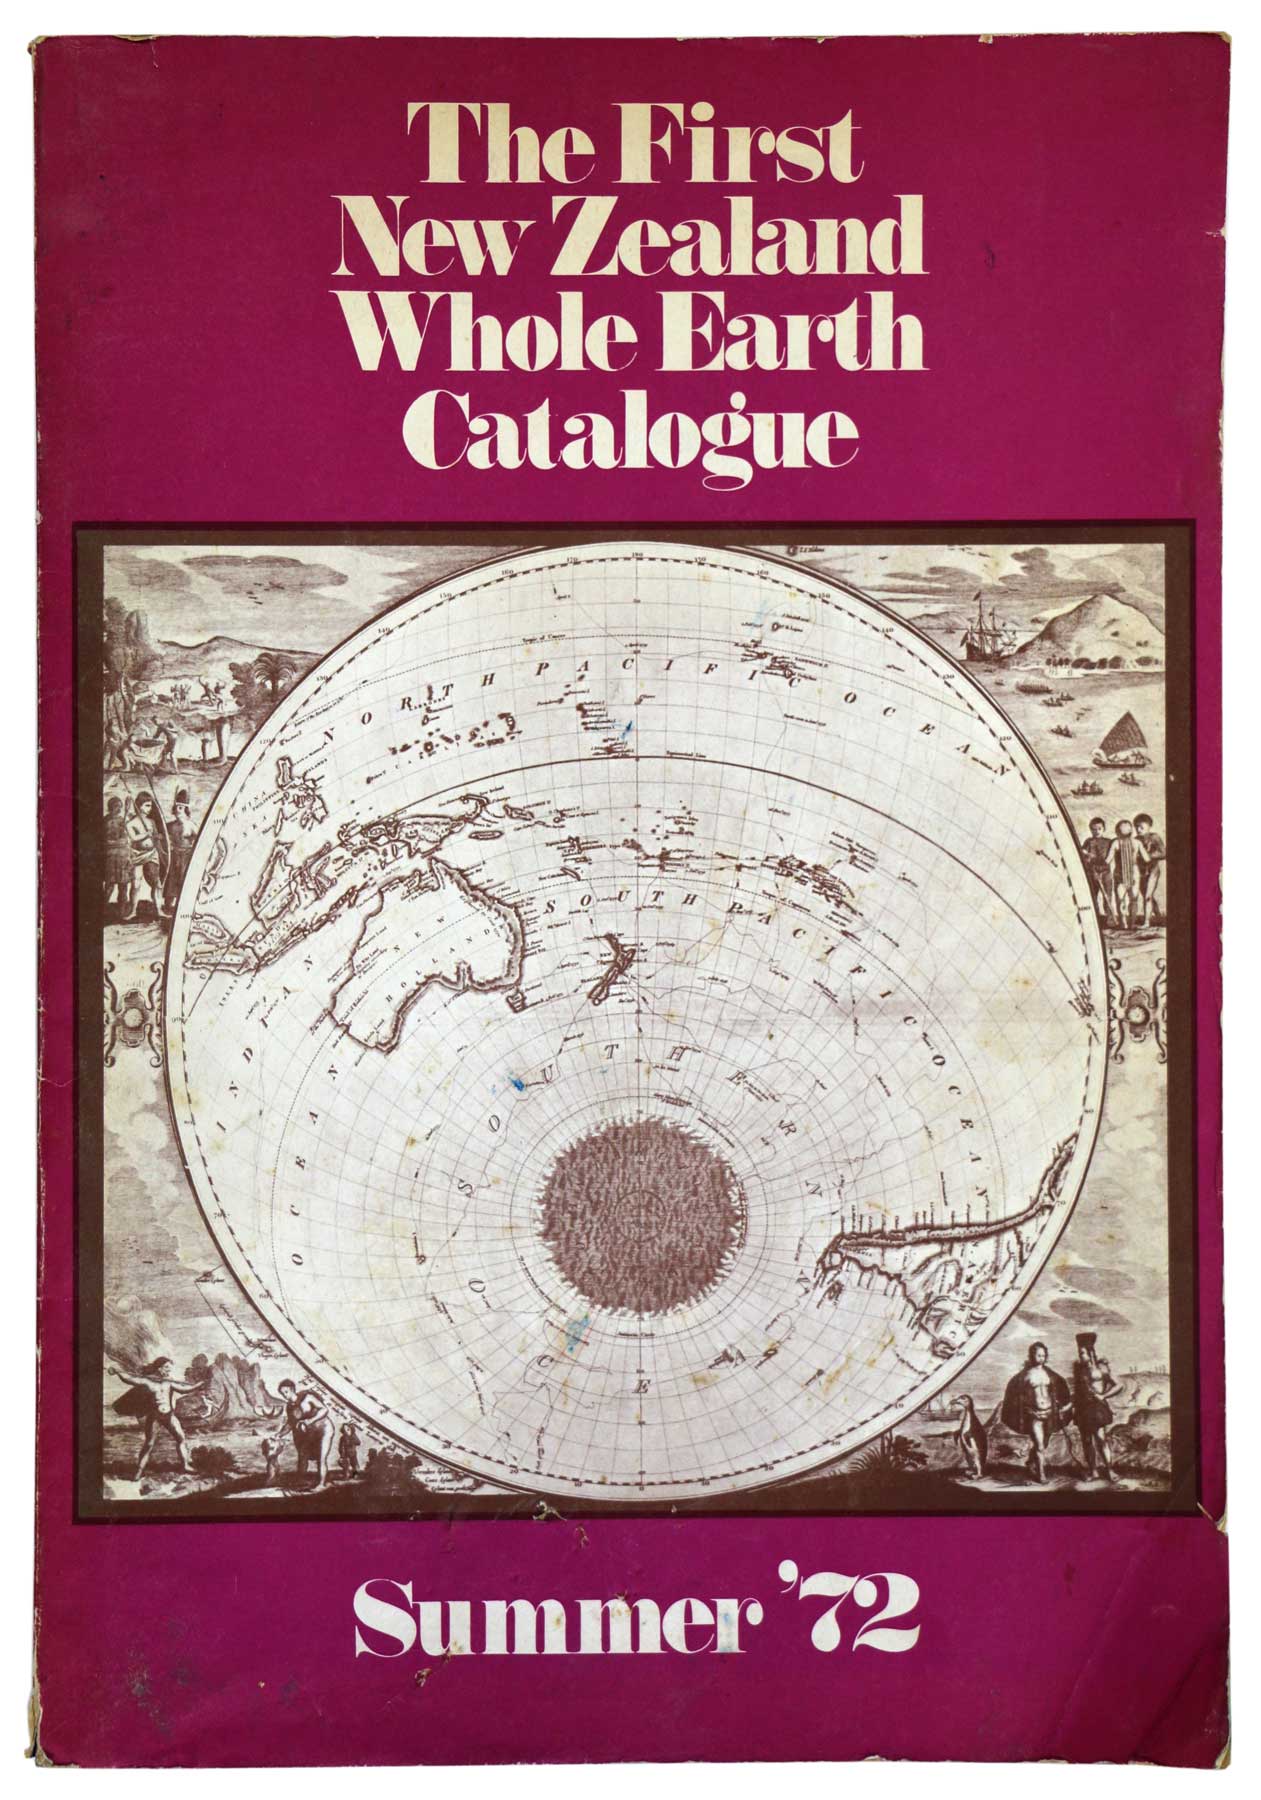 The Last Whole Earth Catalog 1972年 - 洋書